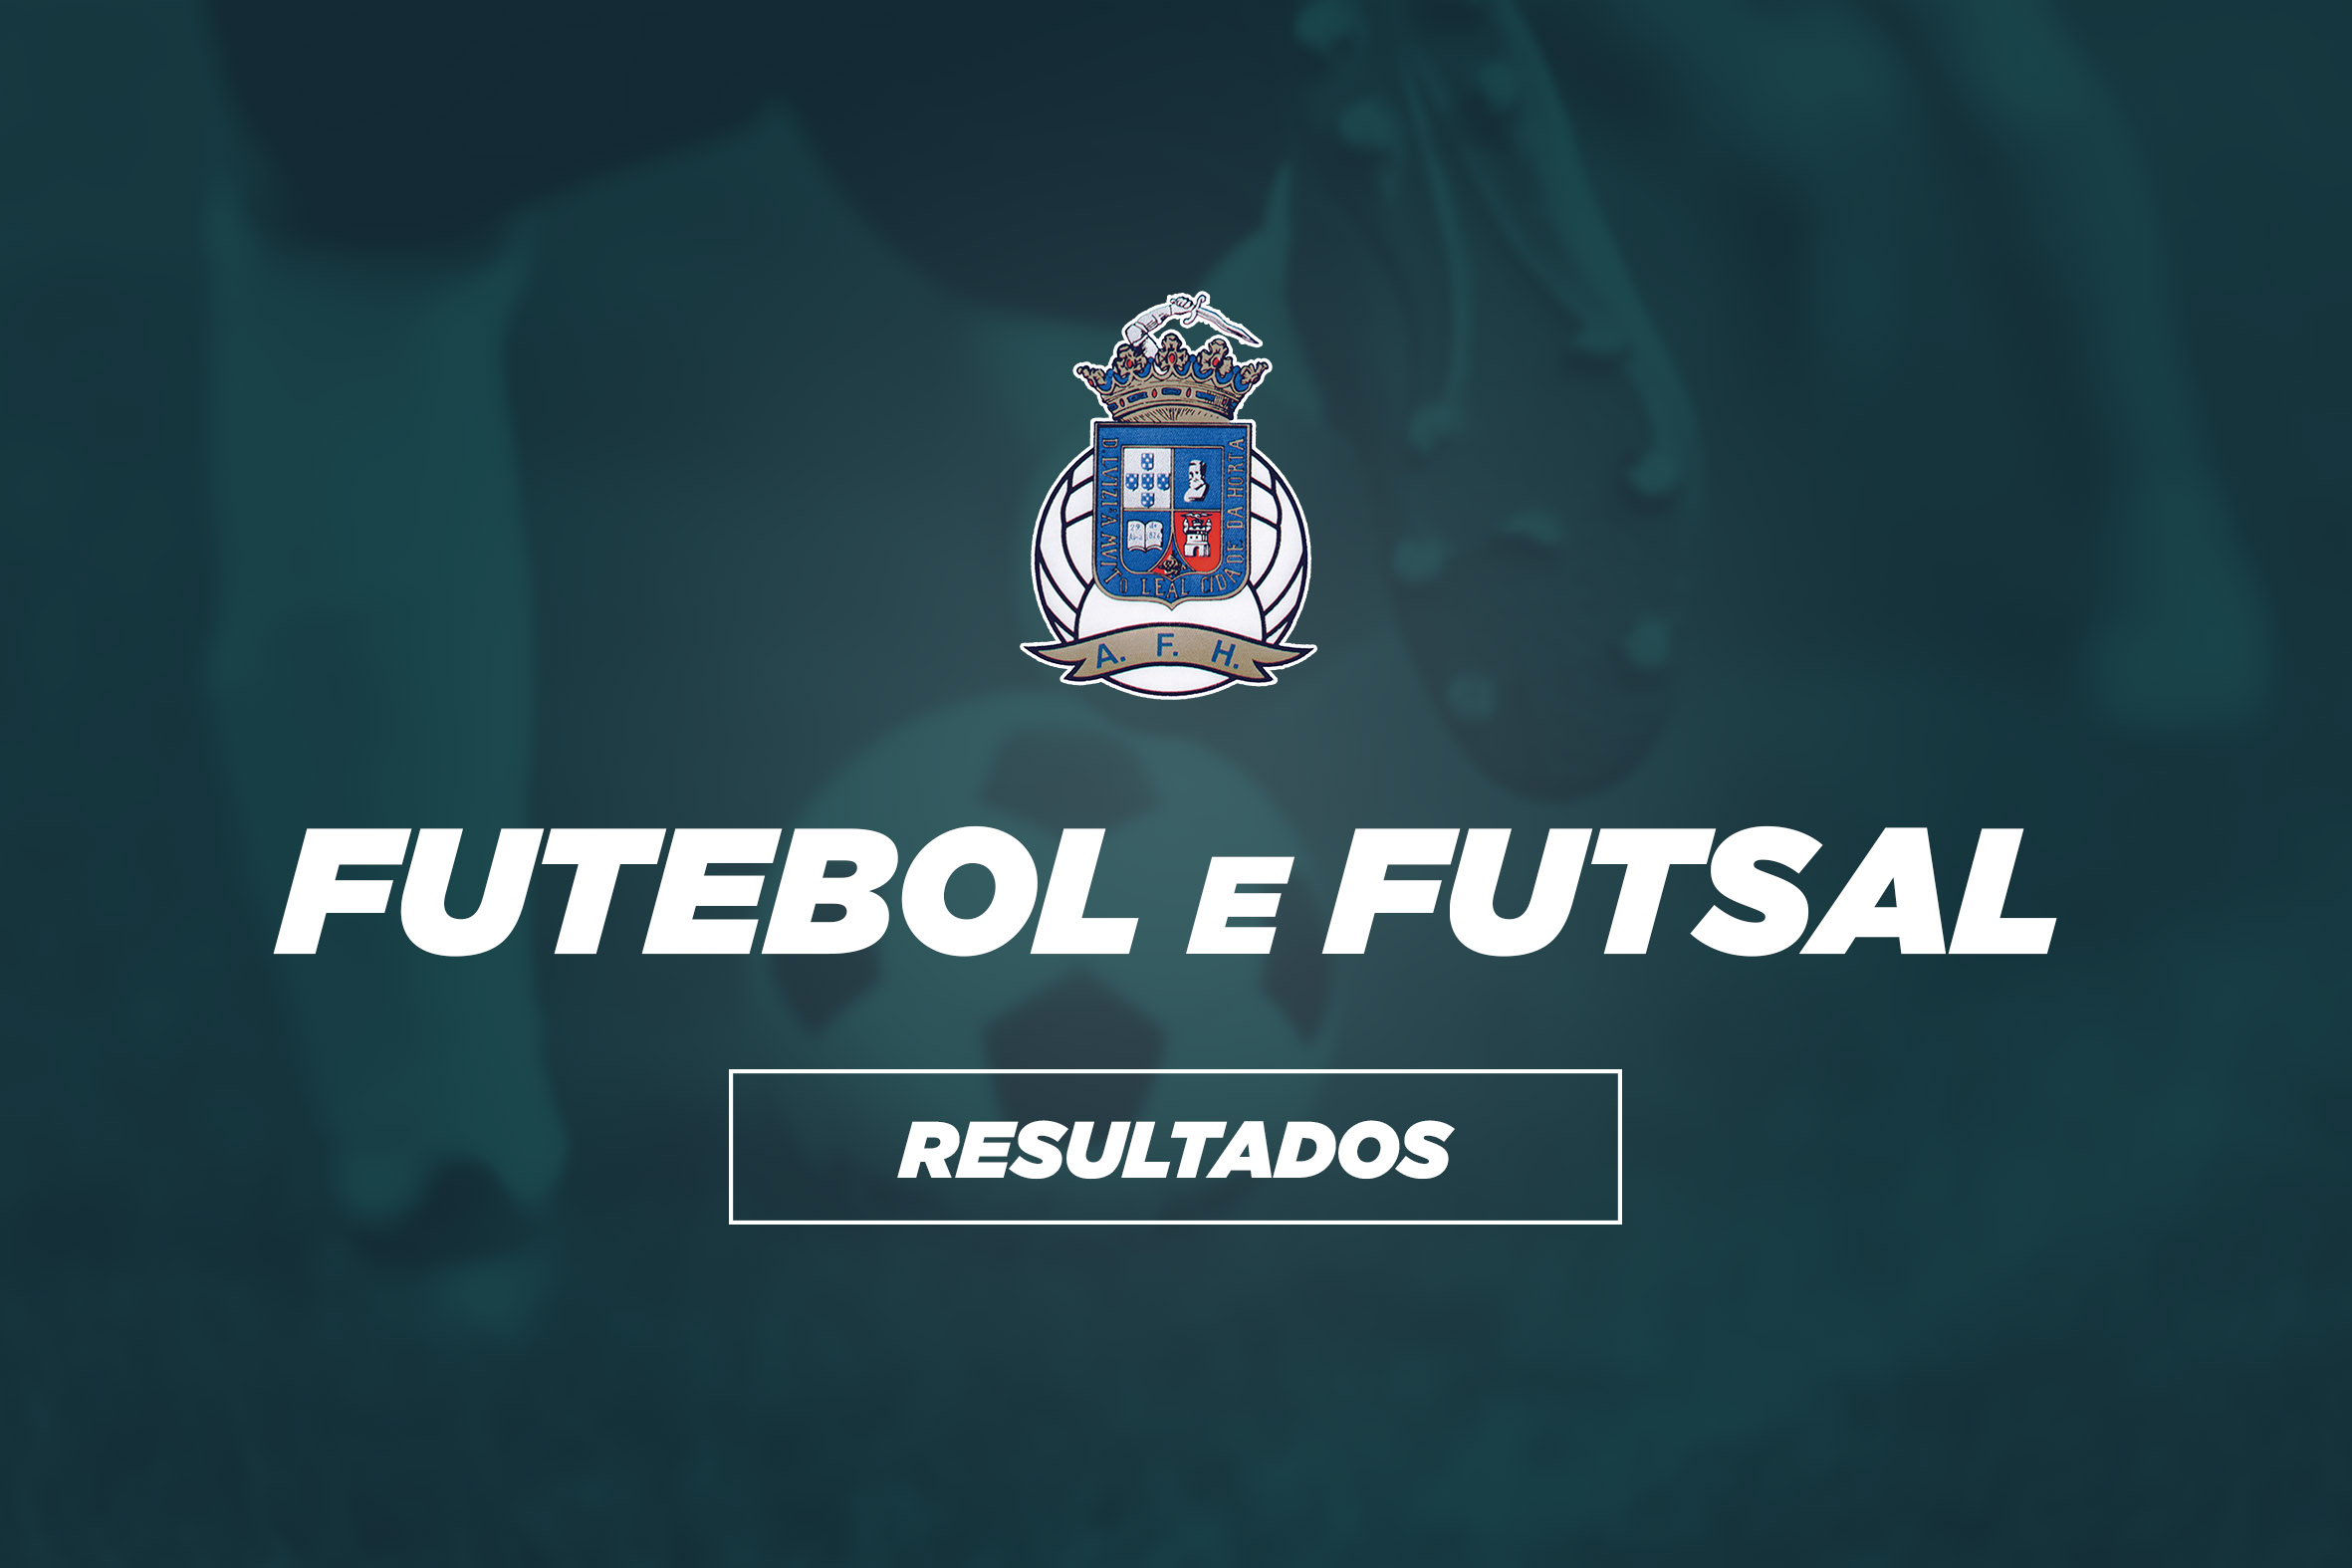 Resultados fim-de-semana | Futebol e Futsal